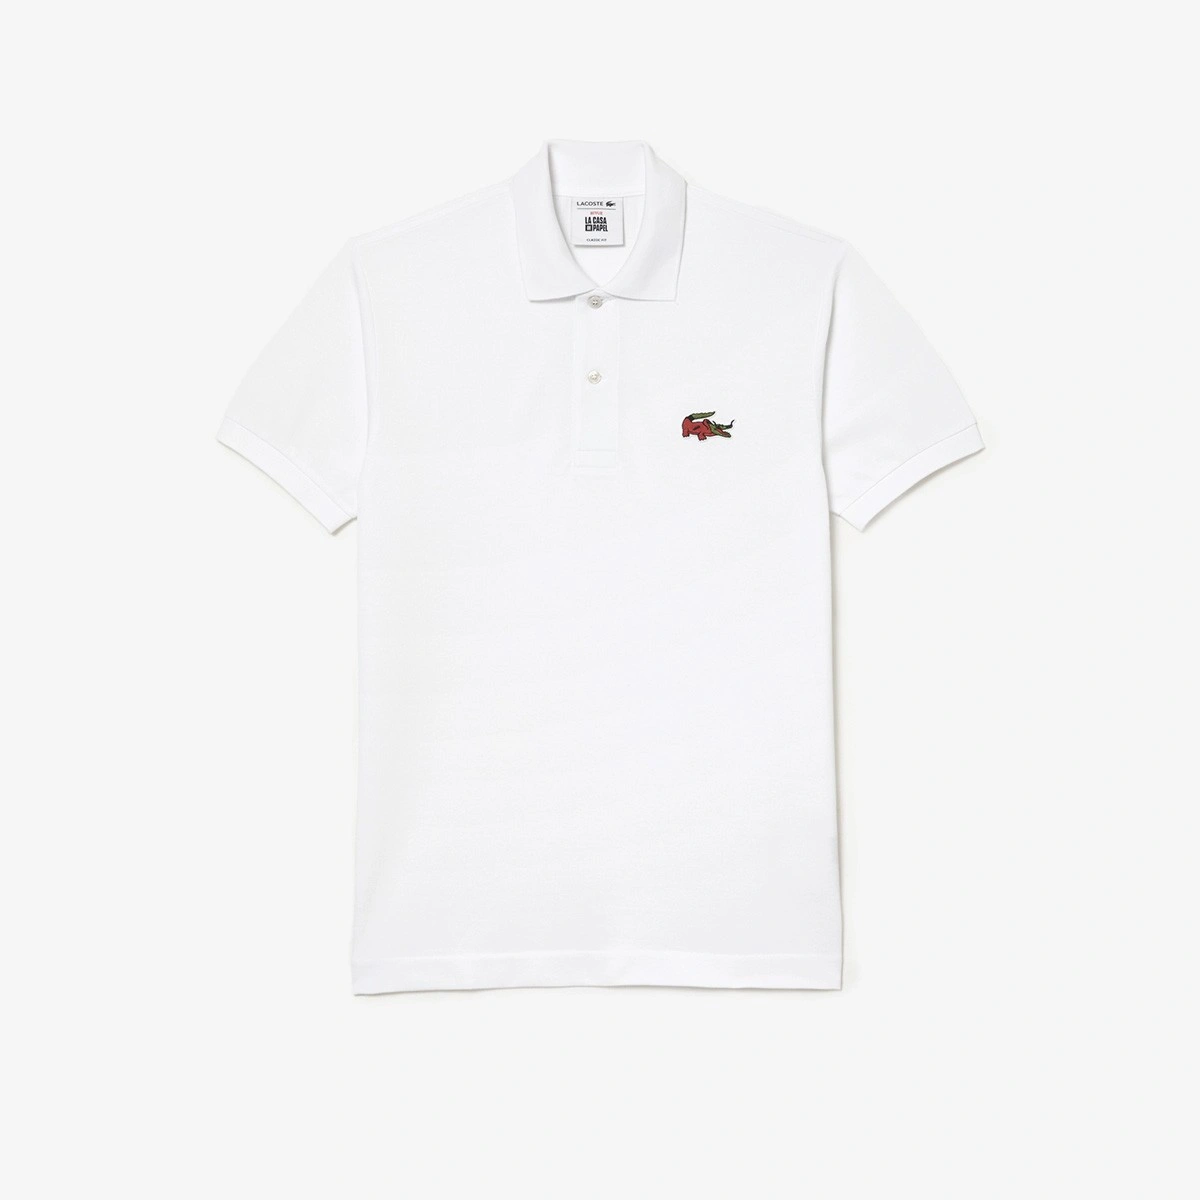 Ανδρική συλλεκτική πόλο μπλούζα Men's Lacoste x Netflix Organic Cotton Polo  - 3PH7057 - LACOSTE - Antoniadis Stores